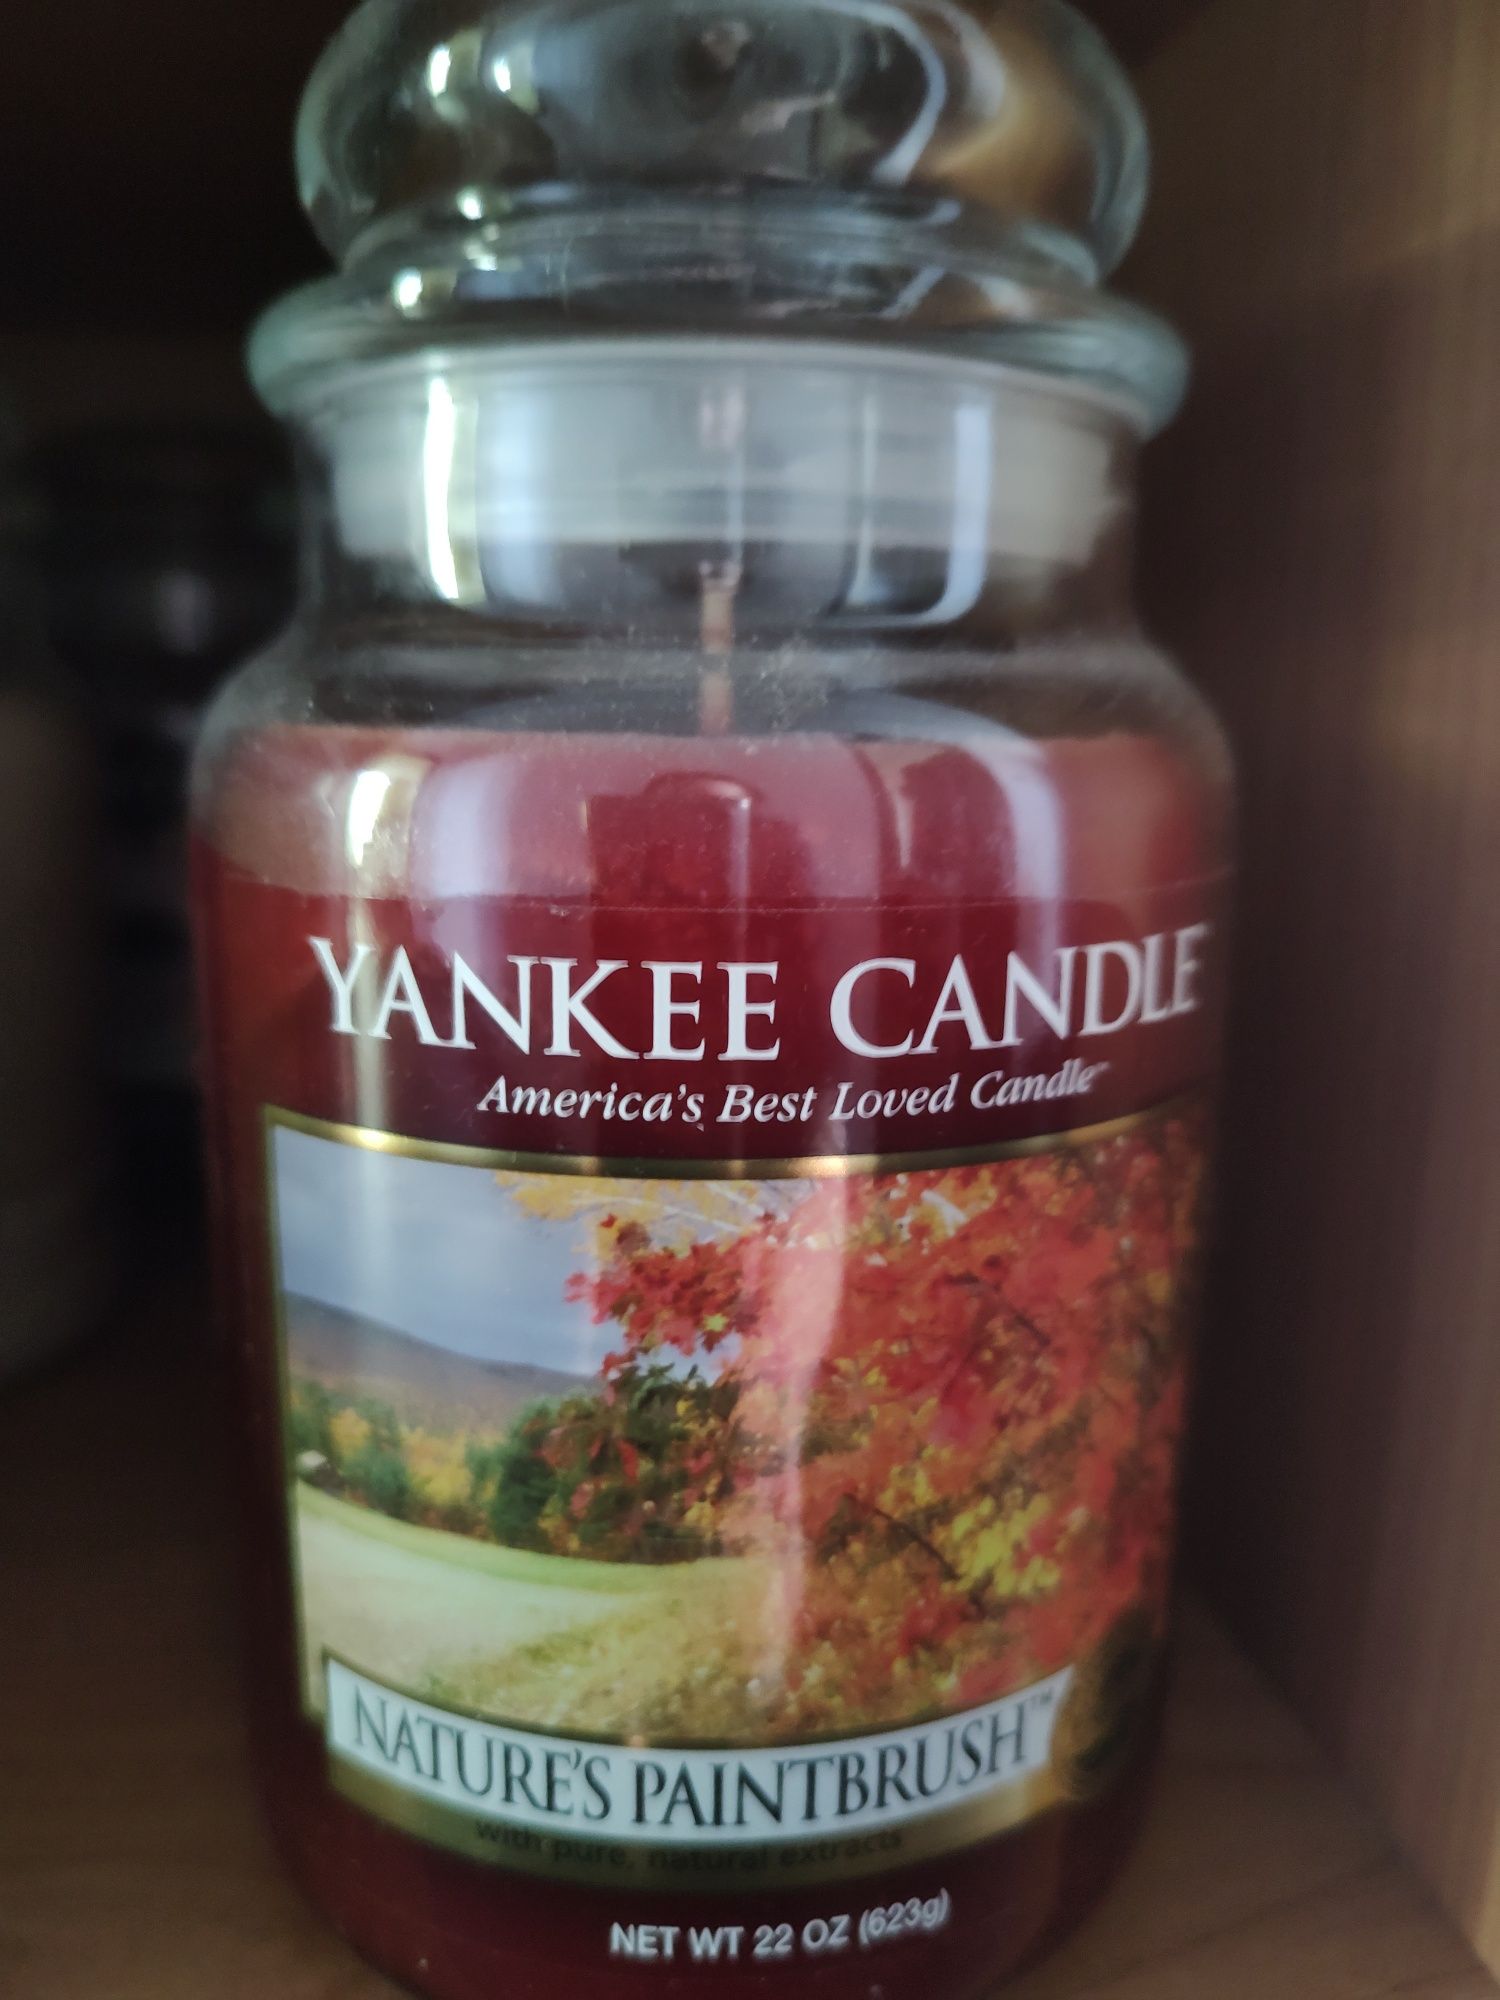 Yankee candle nature's paintbrush unikat